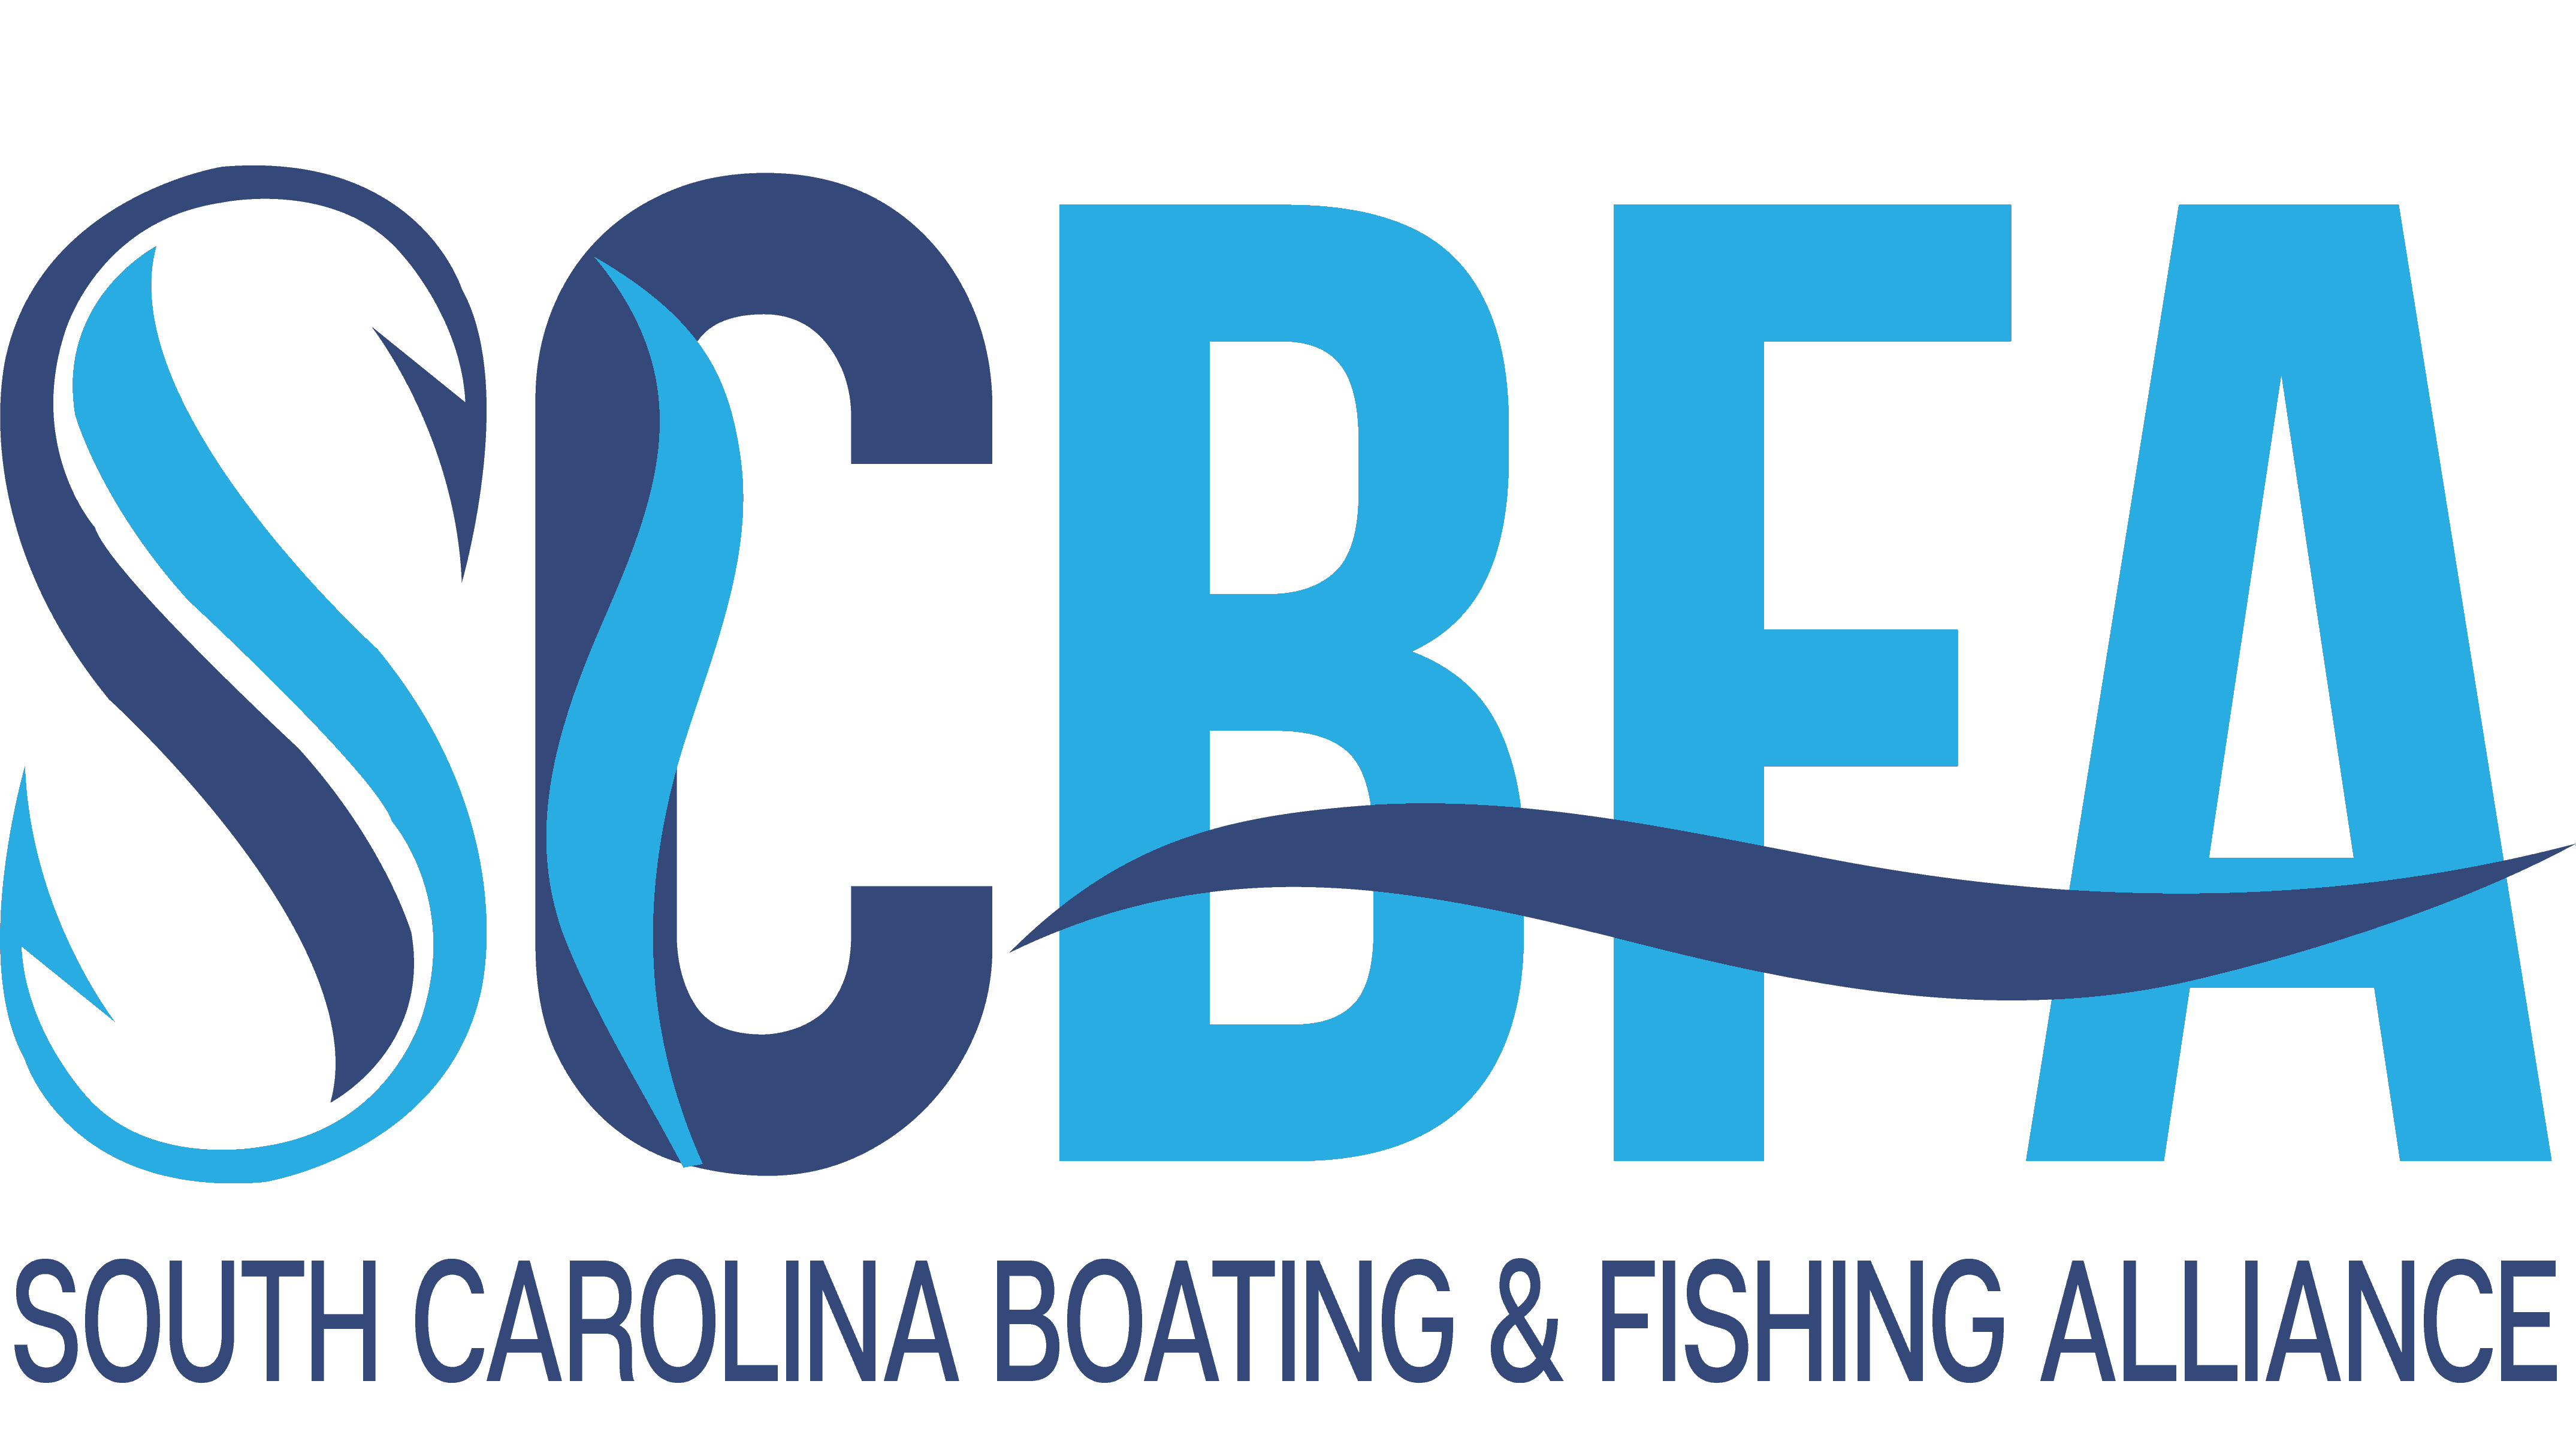 South Carolina Boating & Fishing Alliance